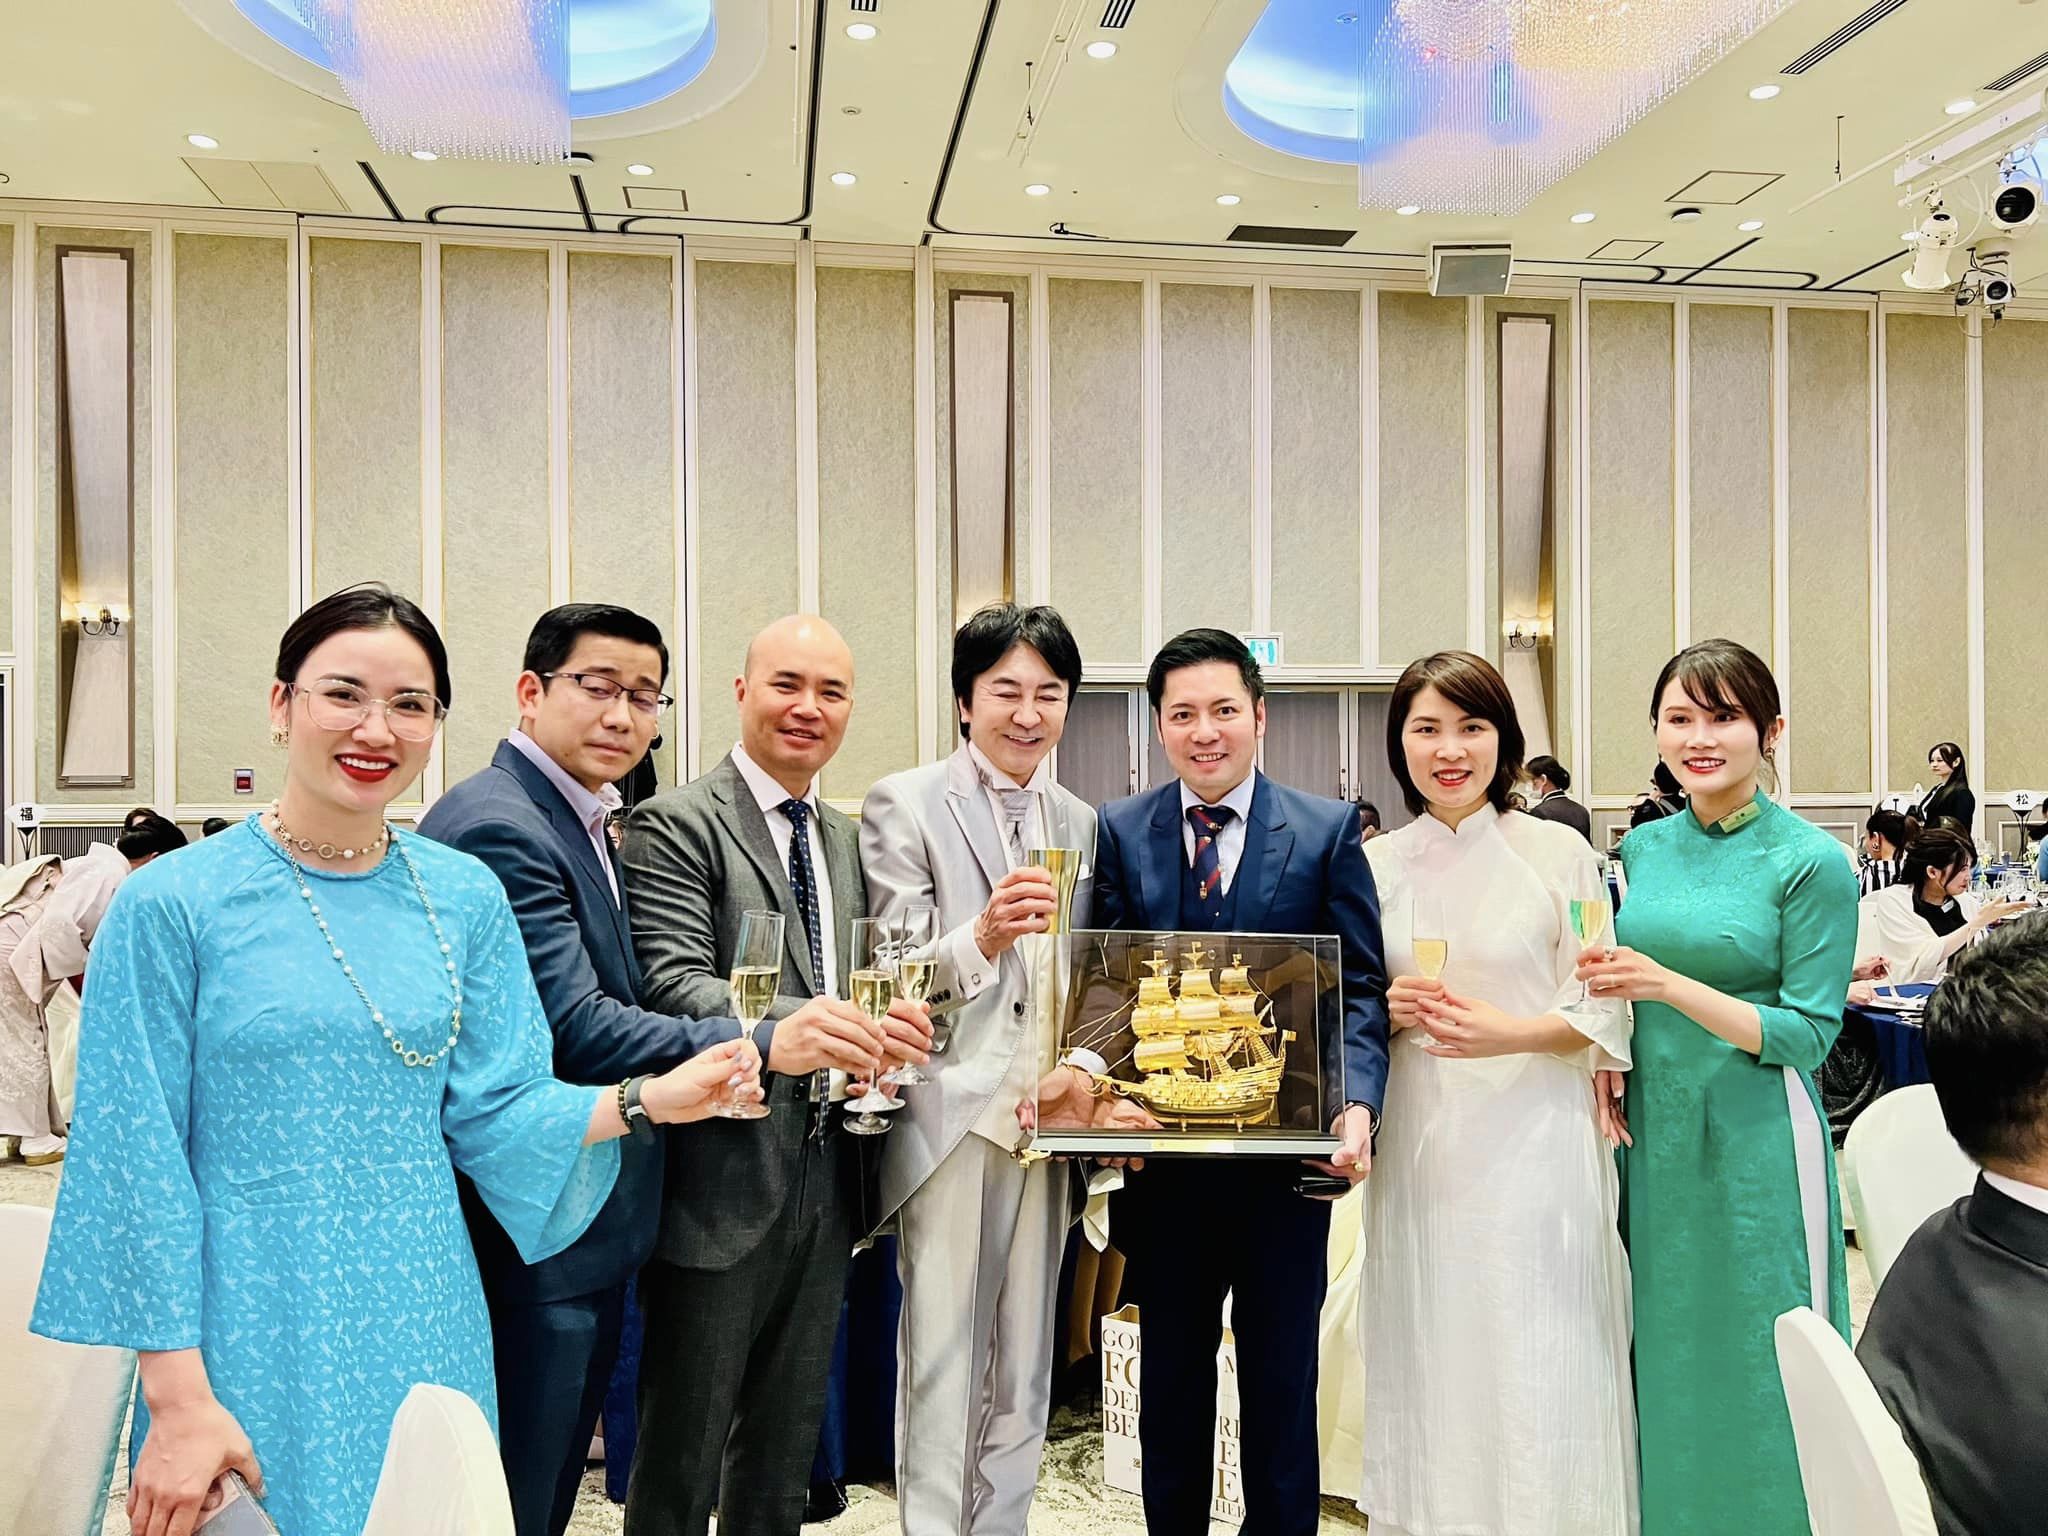 EVER Việt Nam đã vinh dự dành tặng cho EVER JAPAN một món quà ý nghĩa - Con thuyền vàng được chế tác vô cùng tinh xảo và đẳng cấp với ý nghĩa sâu sắc: